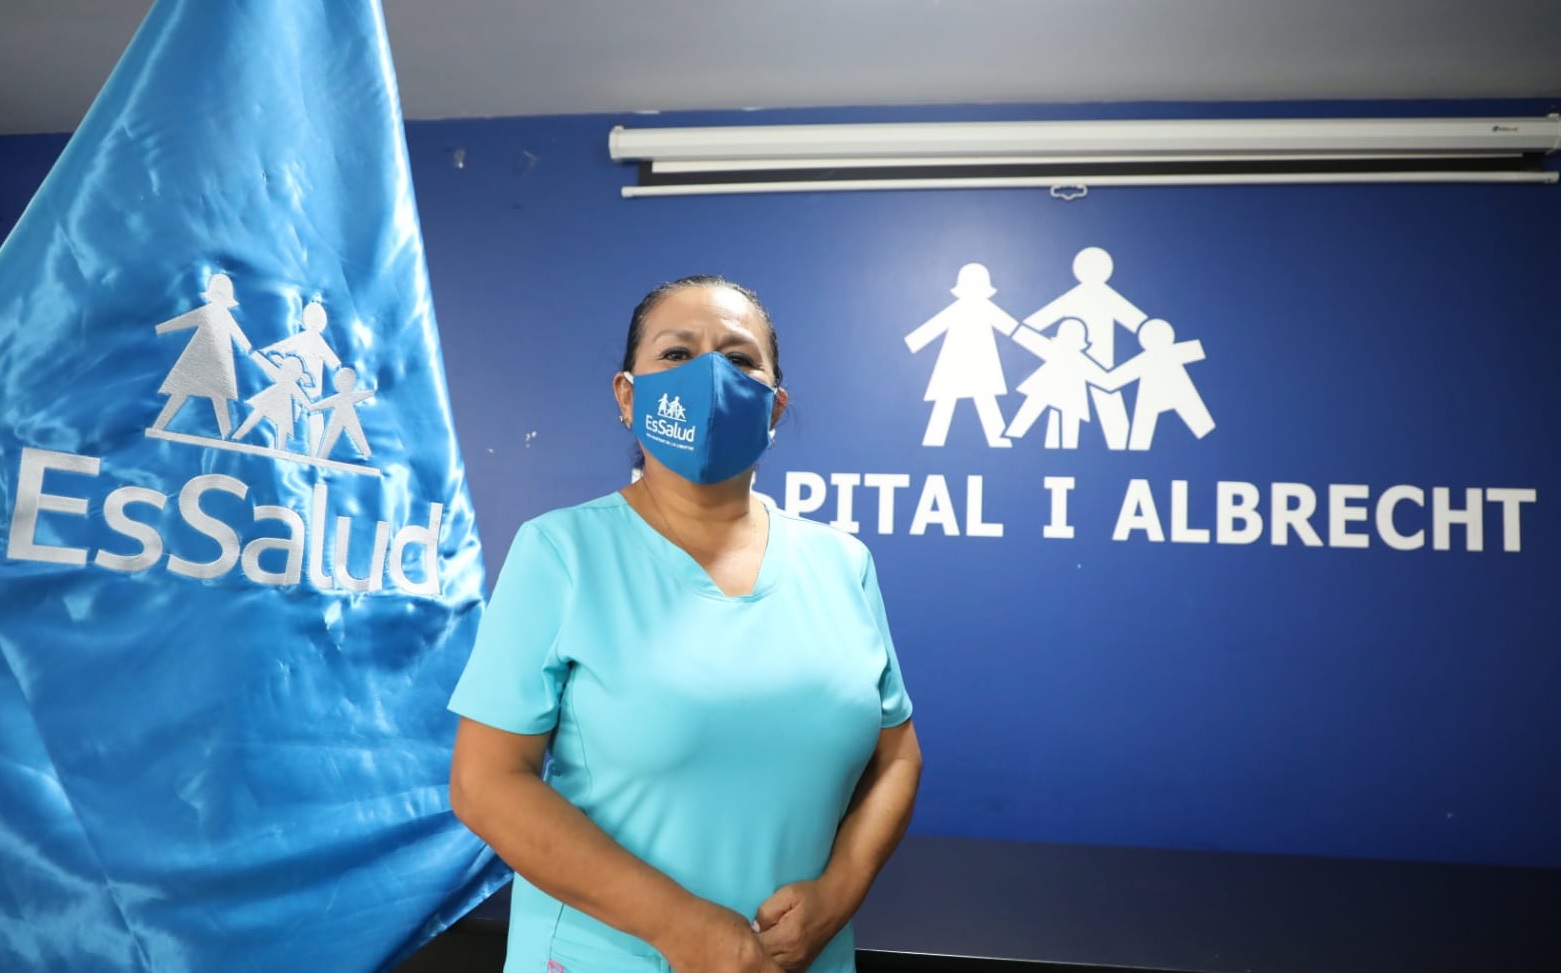 Essalud - Día de la Mujer: EsSalud La Libertad reconoce labor de enfermera que lideró vacunación en pandemia